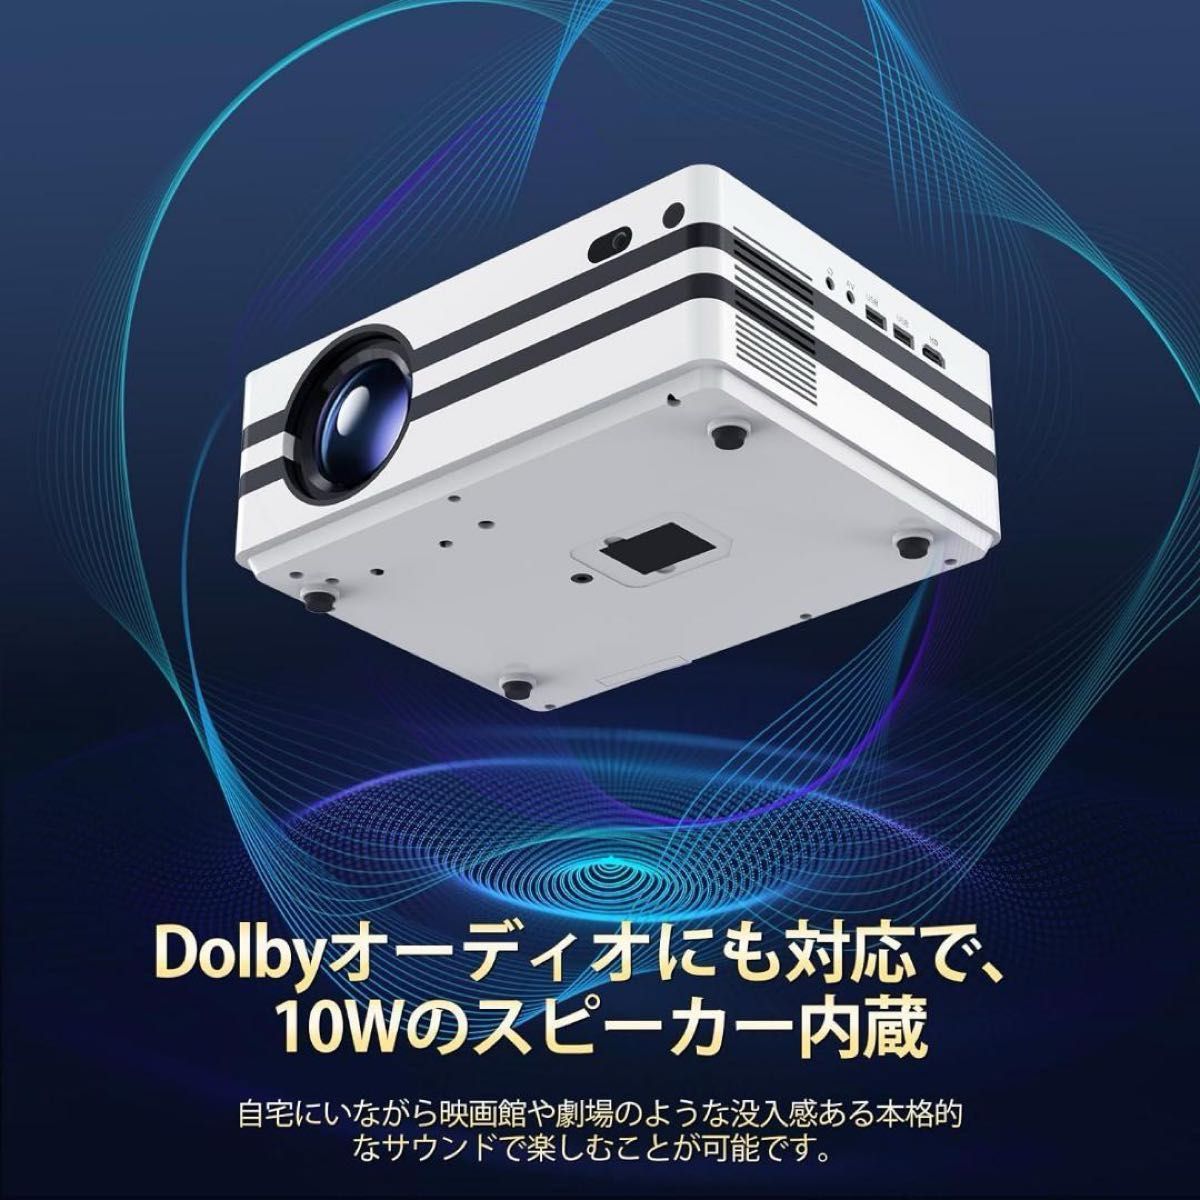 ★セール中★プロジェクタ 20000lm相当 オートフォーカス 軽量 コンパクト Dolby